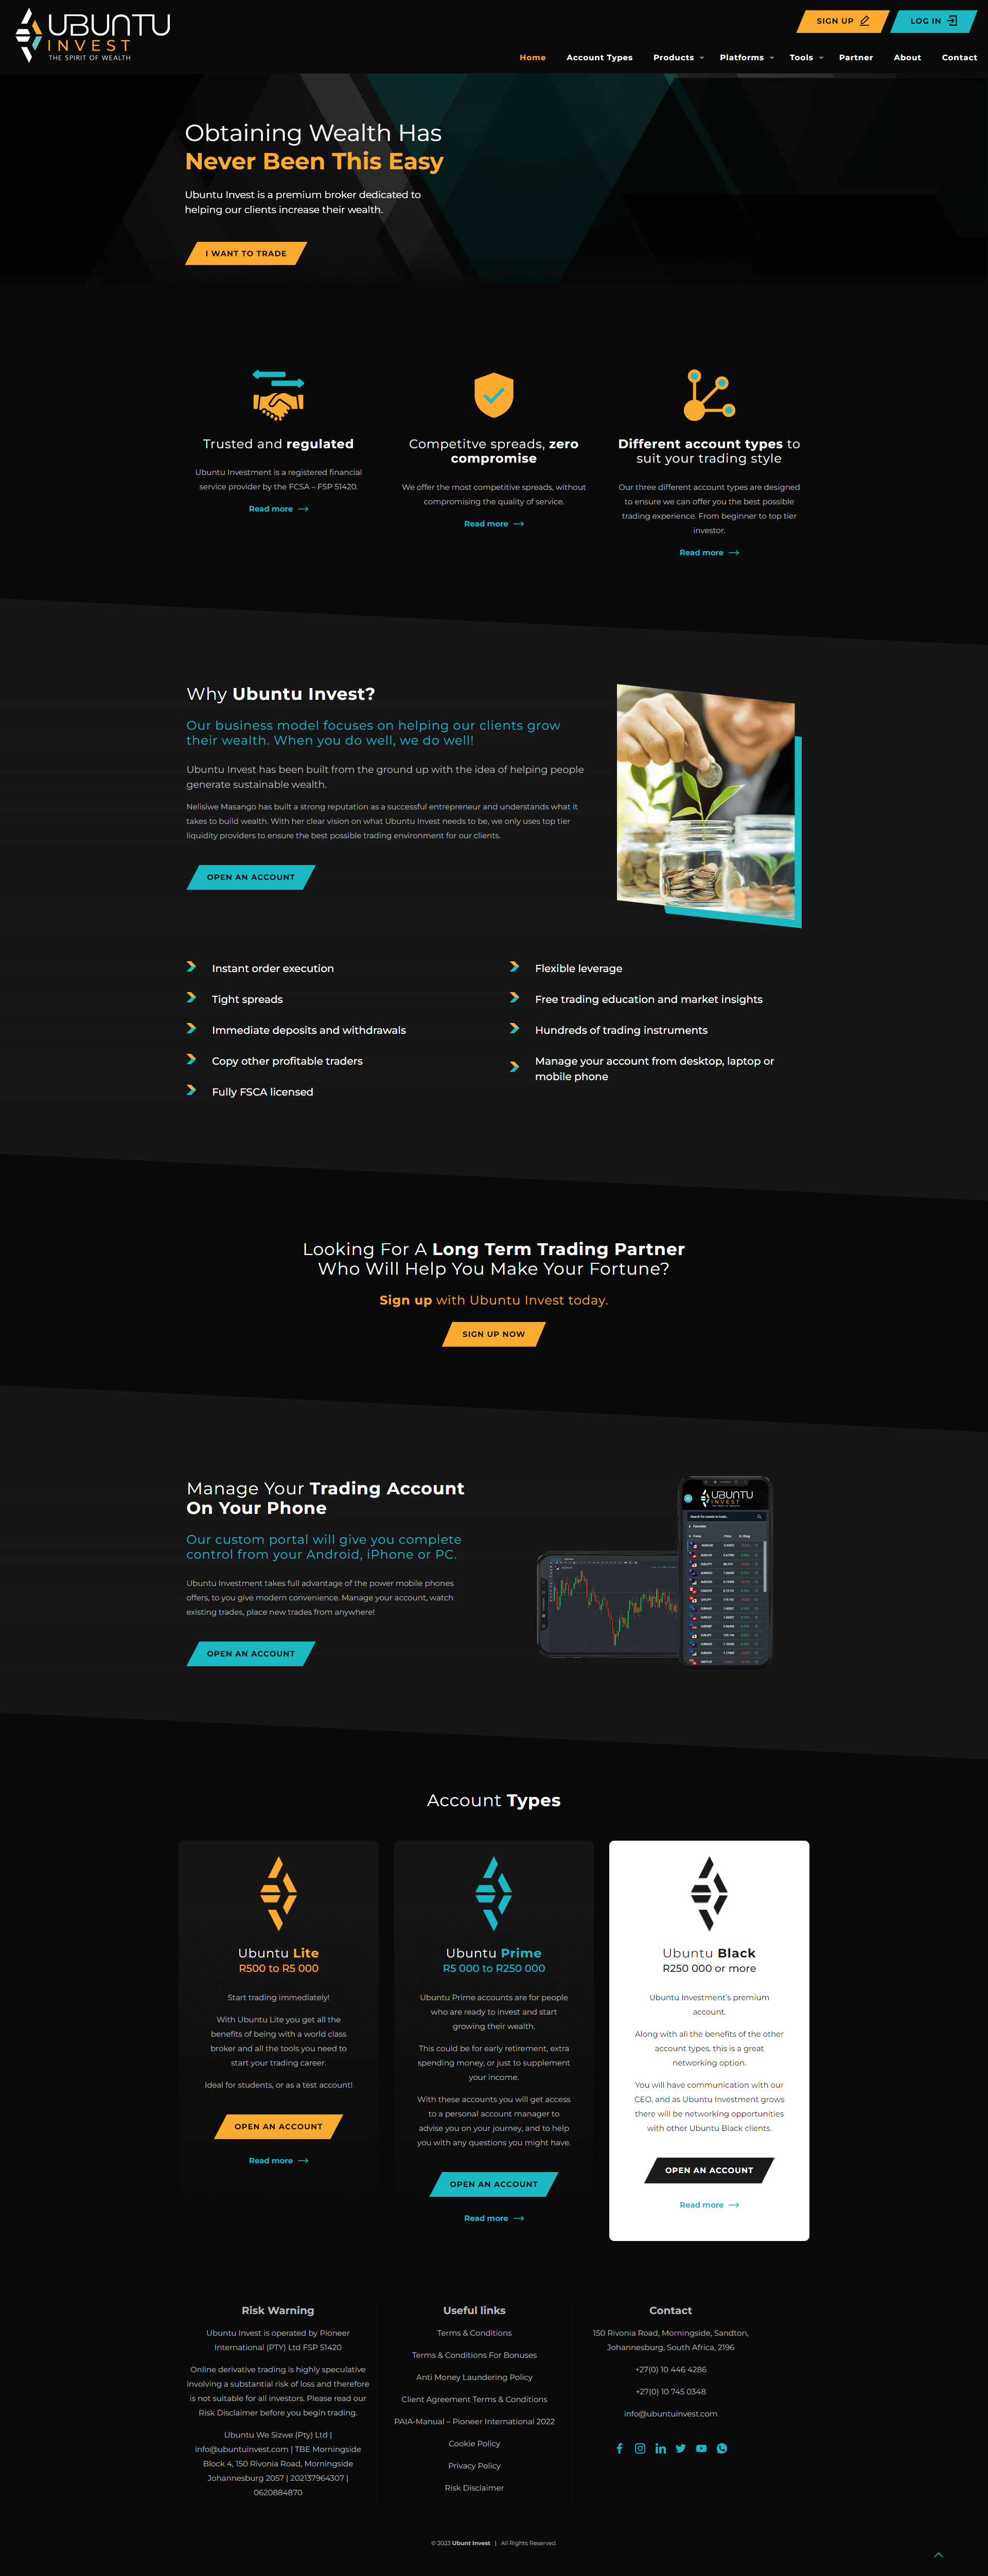 ubuntu invest website